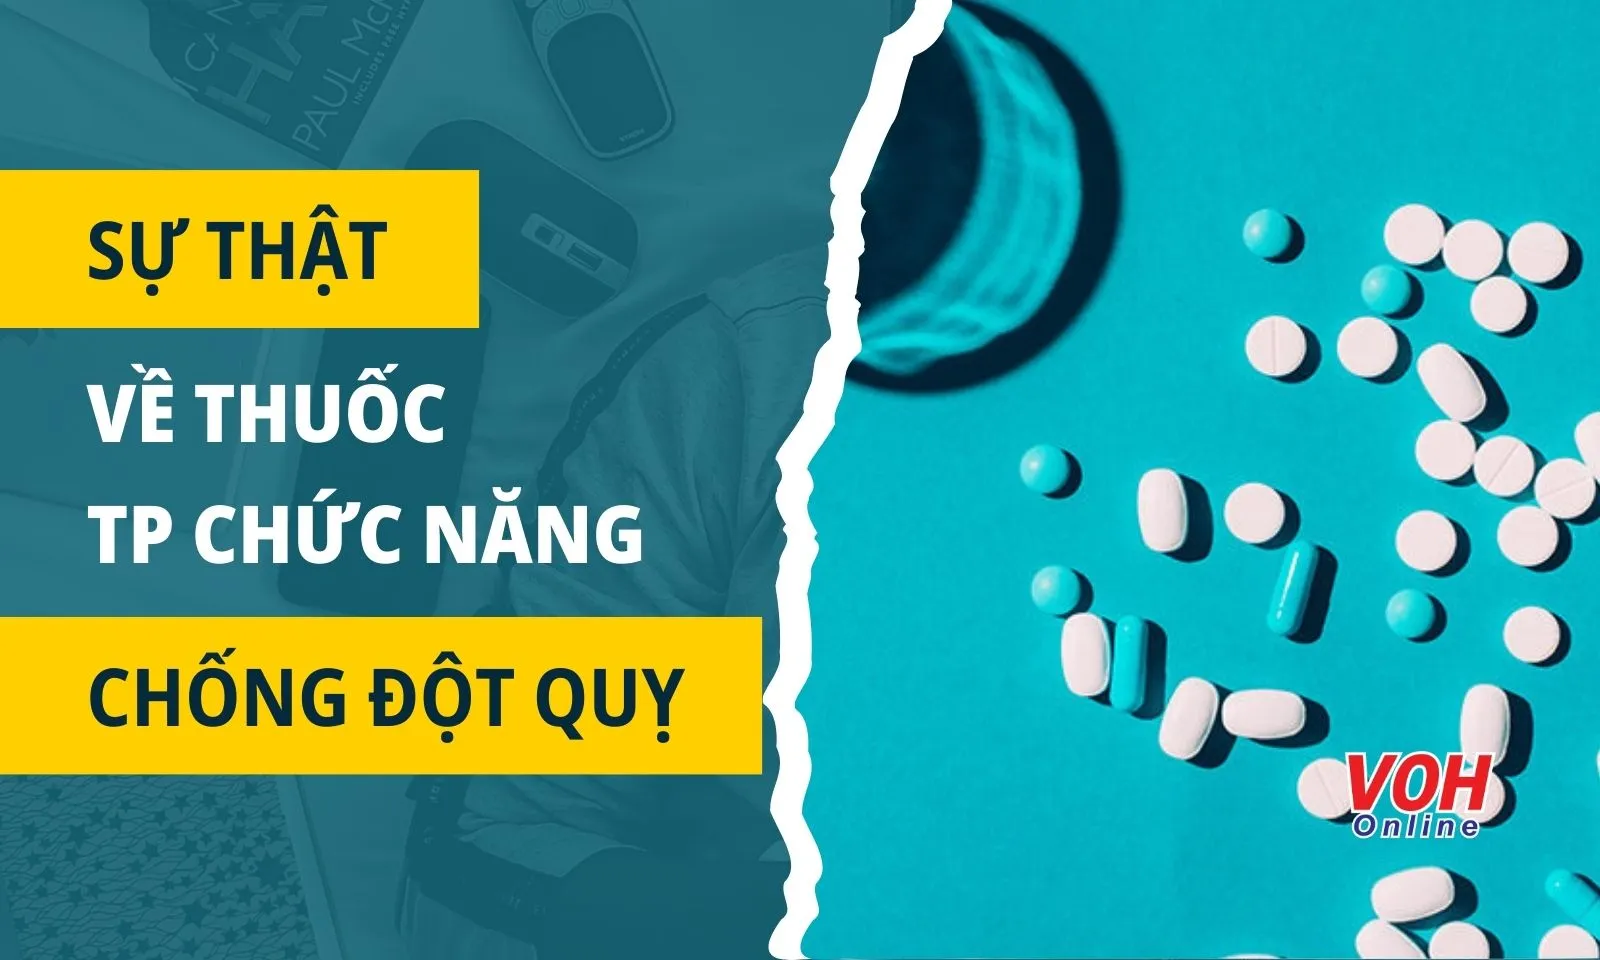 Sự thật về những loại thuốc, TPCN được quảng cáo giúp “chống đột quỵ”